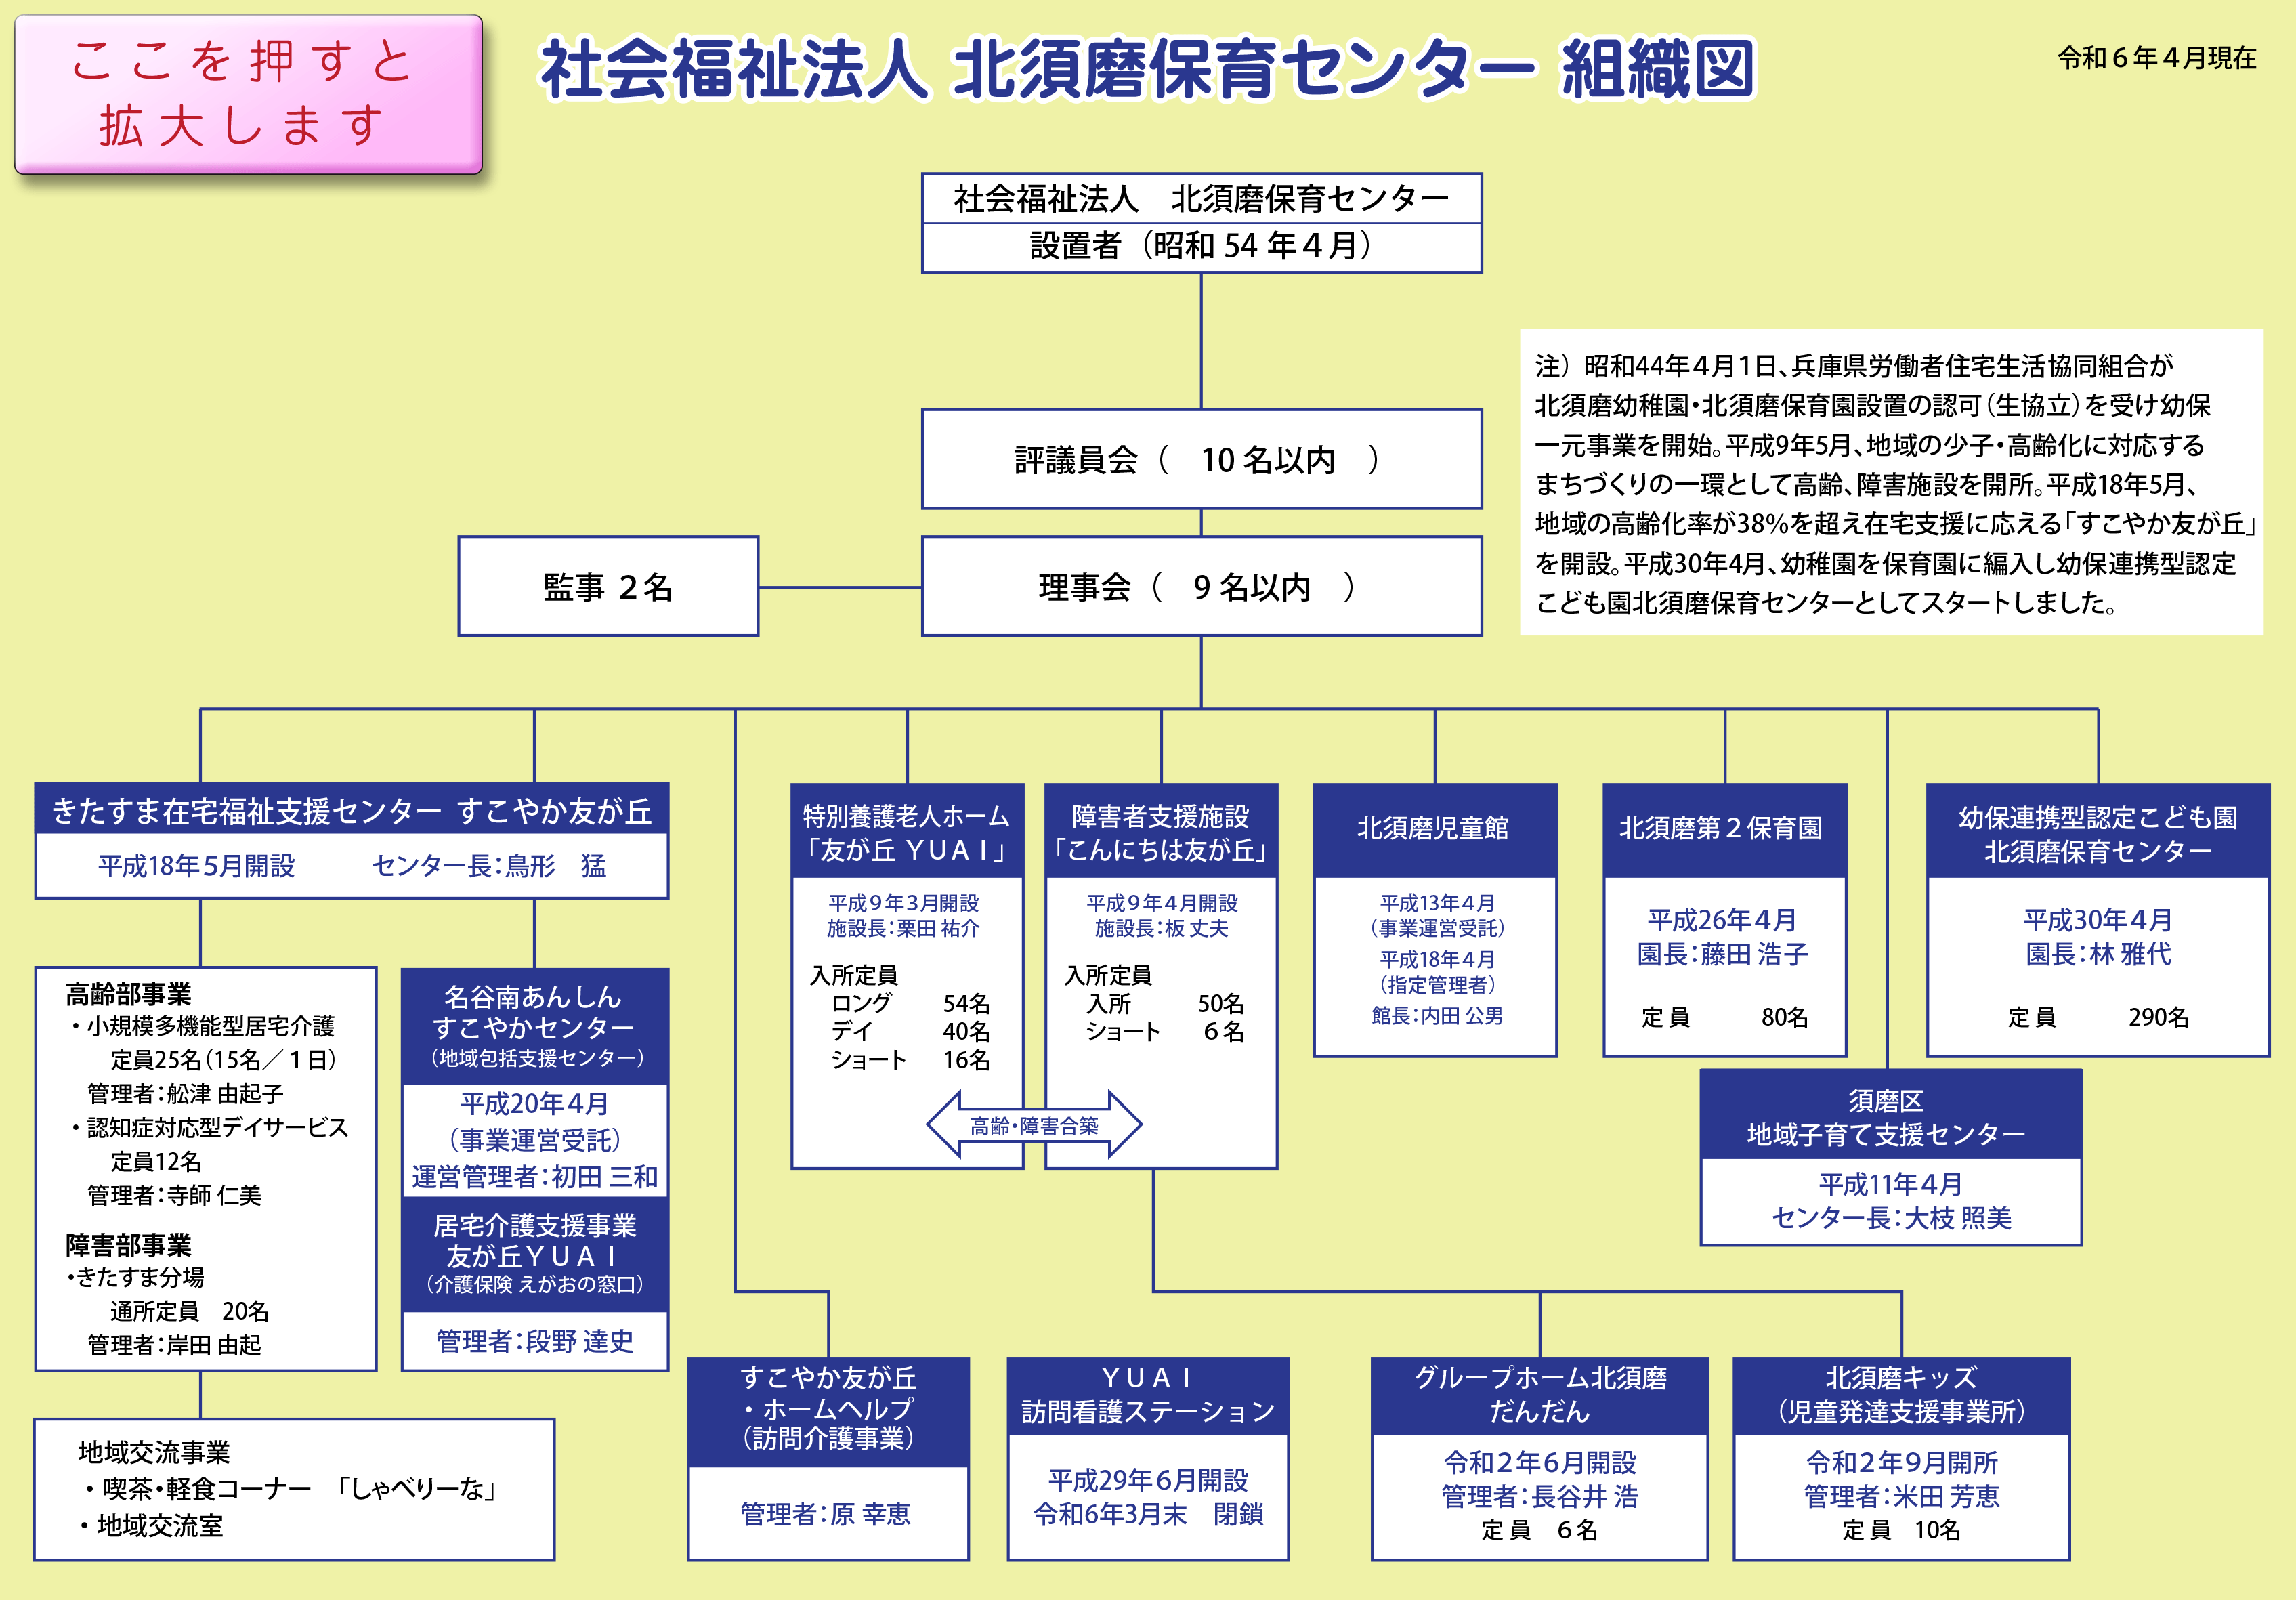 北須磨保育センター組織図